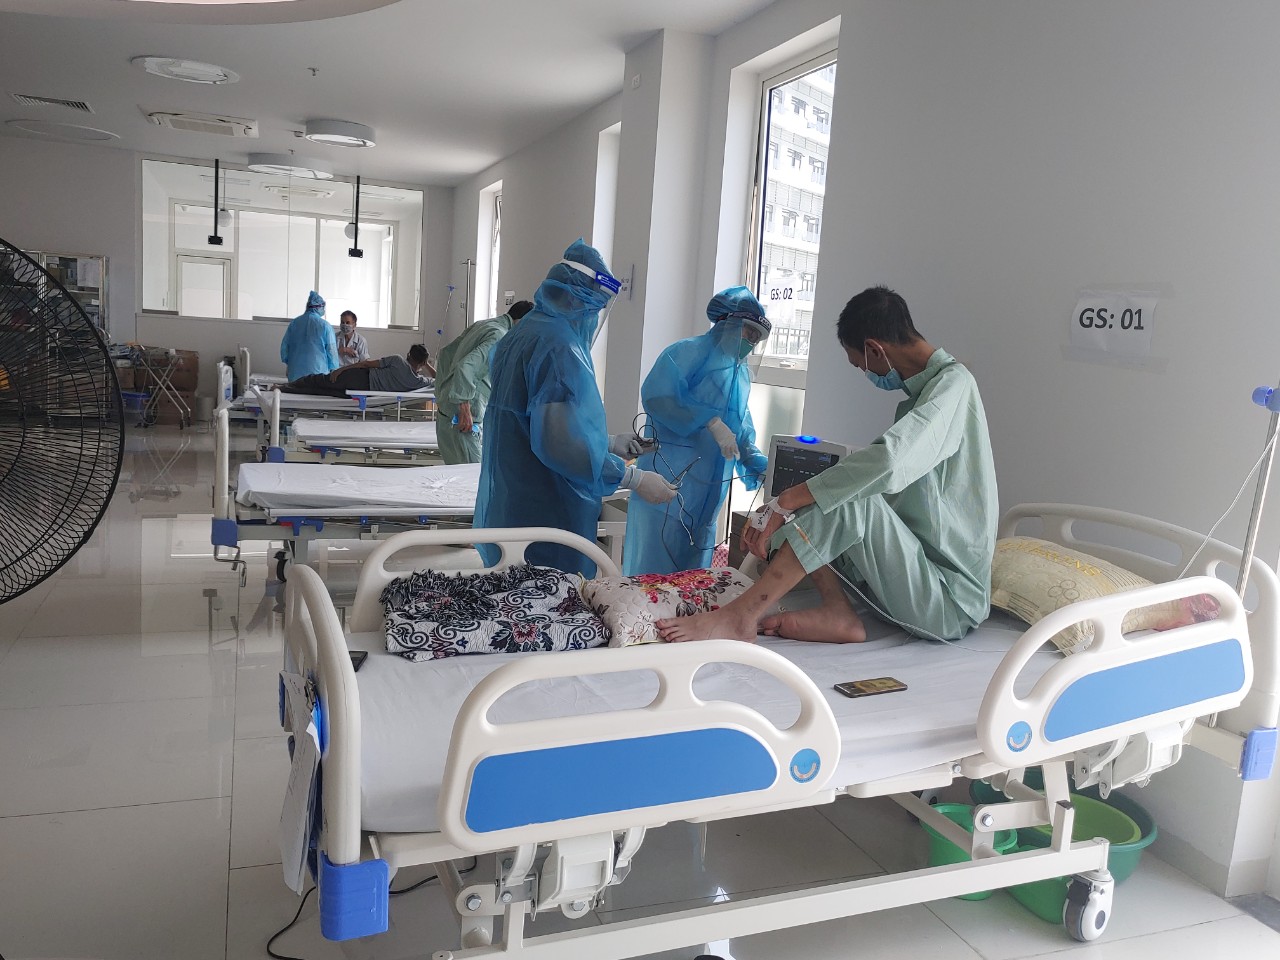 Bên trong khu cách ly, điều trị bệnh nhân Covid-19 tại Bệnh viện Bạch Mai cơ sở 2 - Ảnh 8.